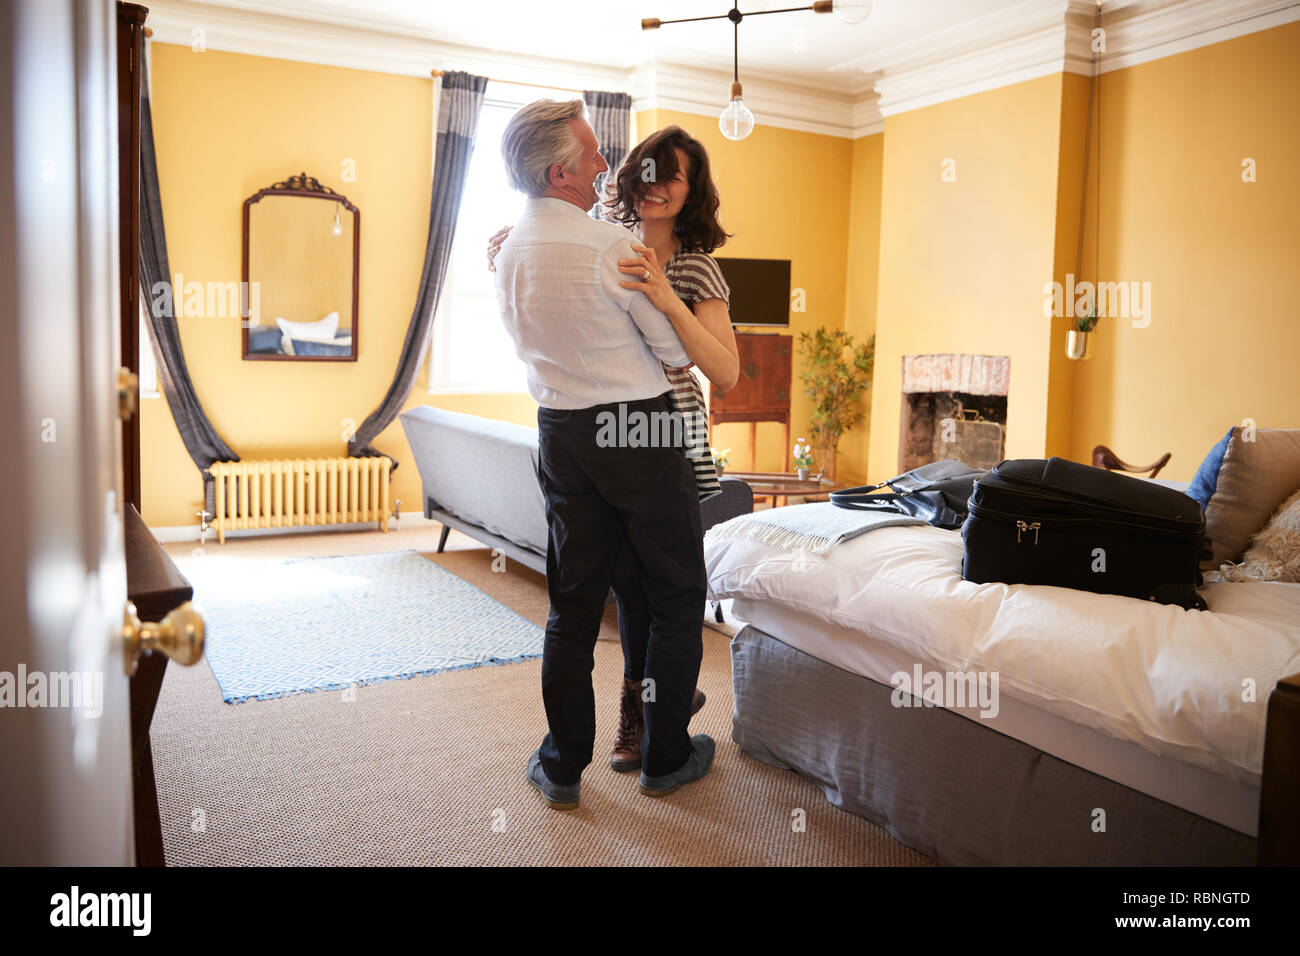 Couple d'âge moyen embrasser, souriant dans leur chambre d'hôtel Banque D'Images